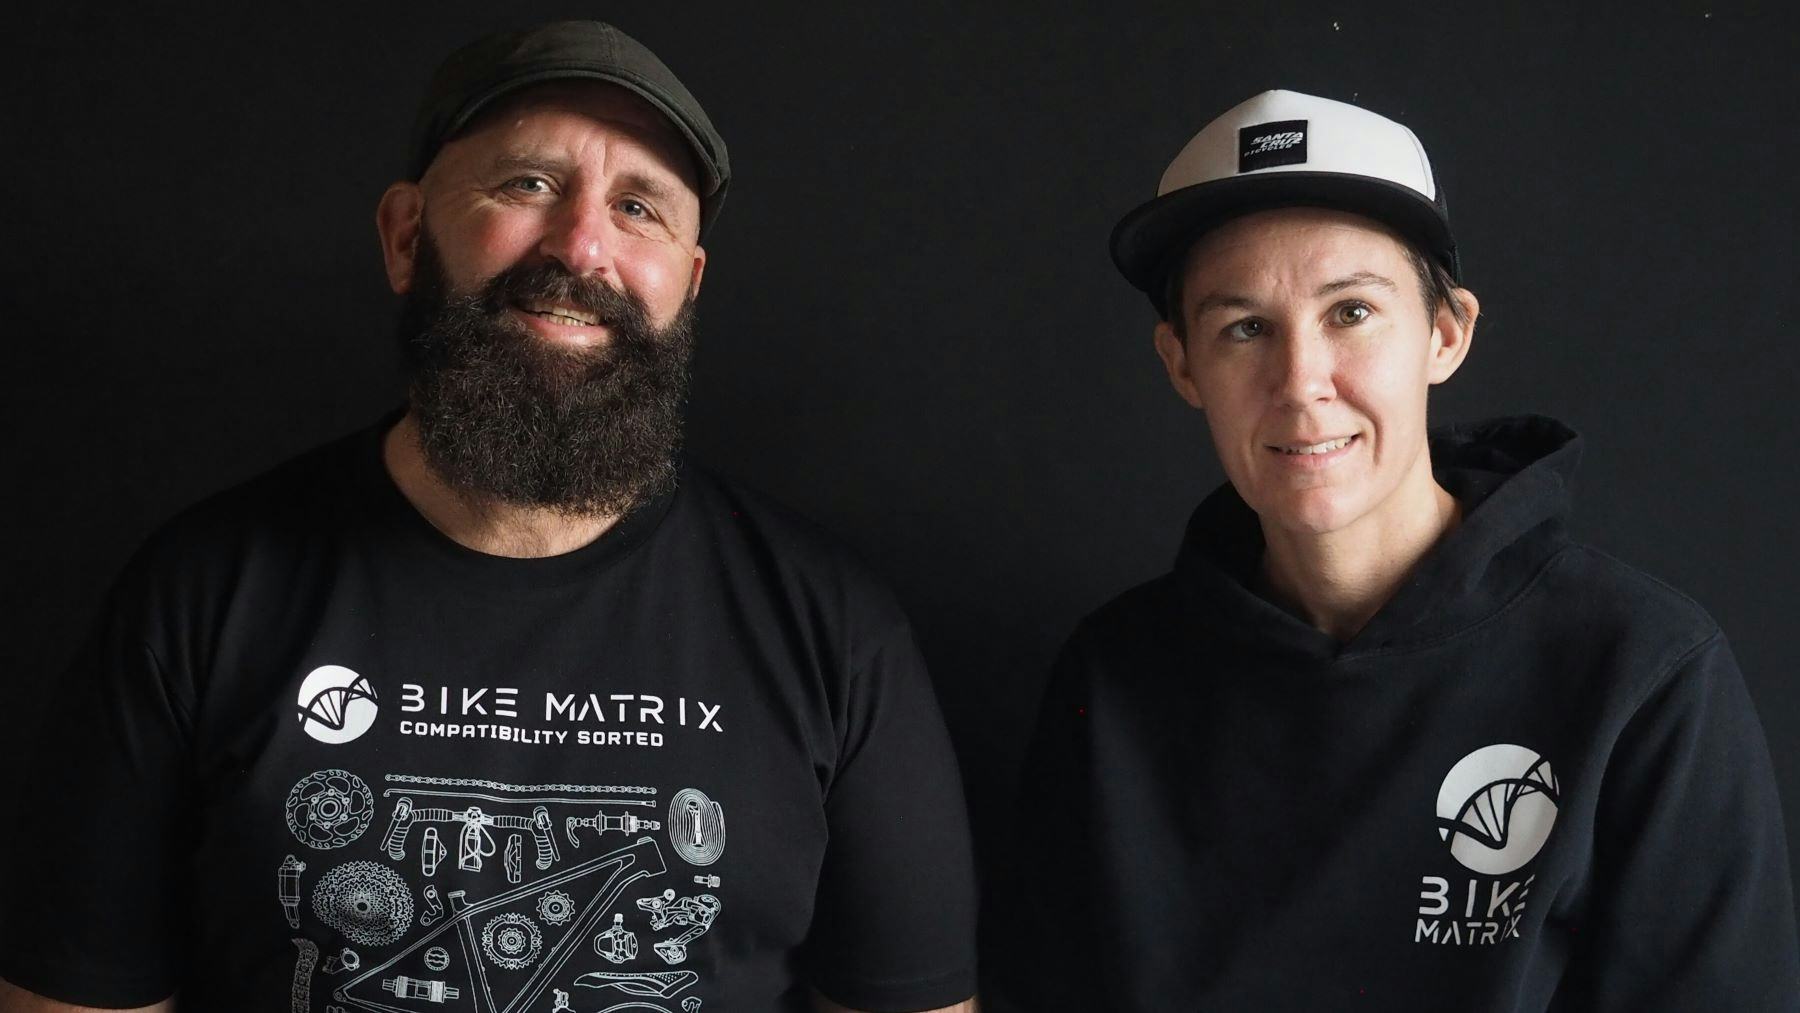 Bike Matrix共同創辦人Adam Townsend和Lyndal Bailey兩人在自行車維修領域皆有相當豐富的經歷，也早已意識到零件相容性數據解決方案的重要性。照片來源／Bike Matrix